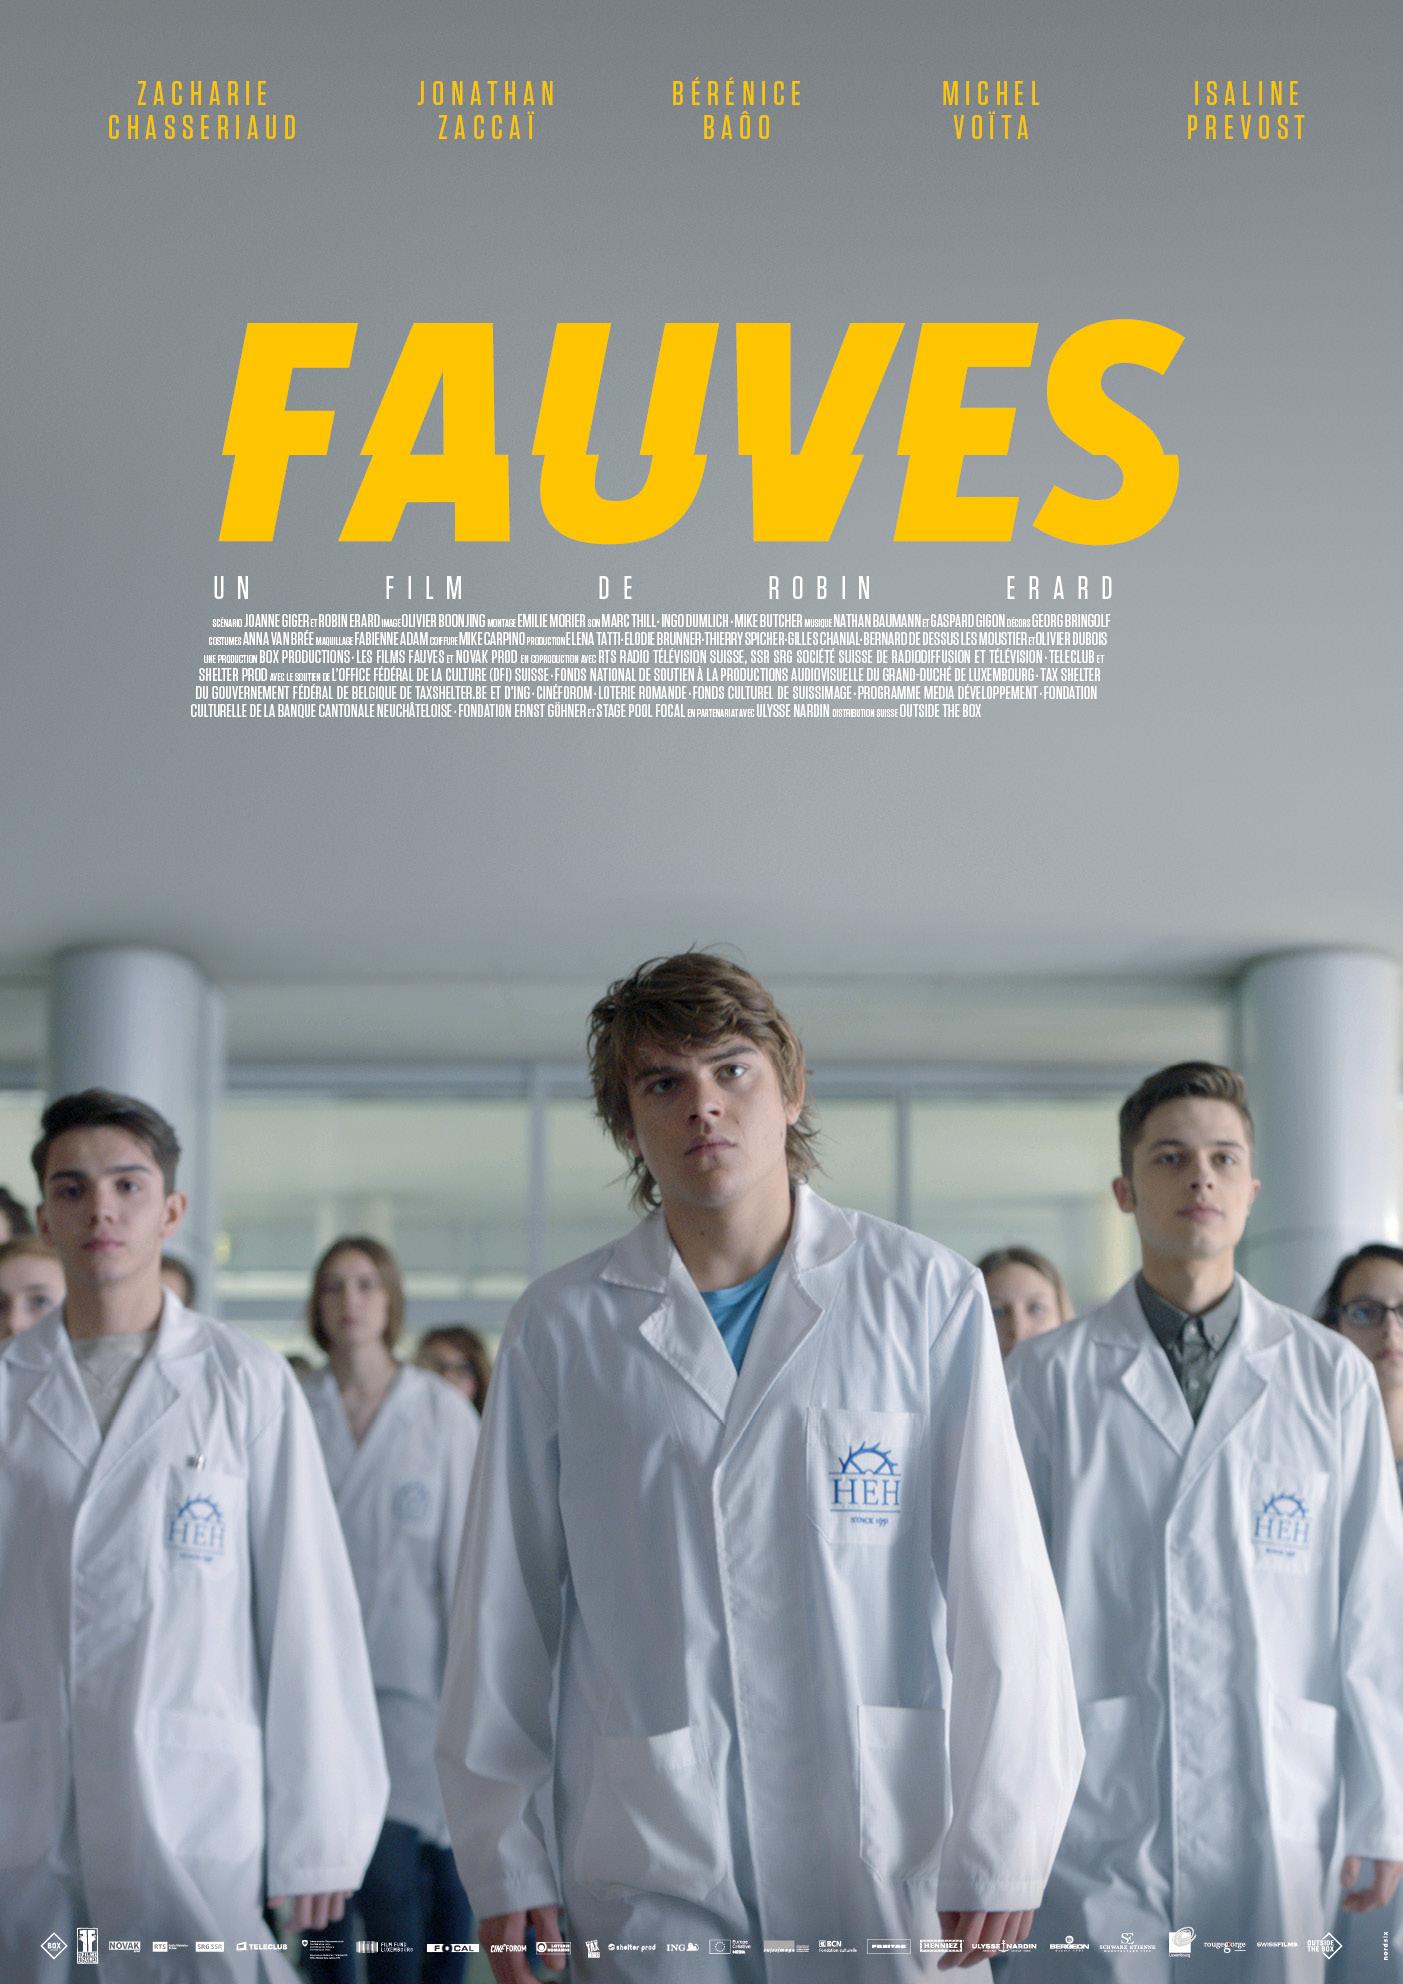 L'affiche de "Fauves", un film de Robin Erard. [Novak Productions / RTS Radio Télévision Suisse - Box Productions / Les Films Fauves]